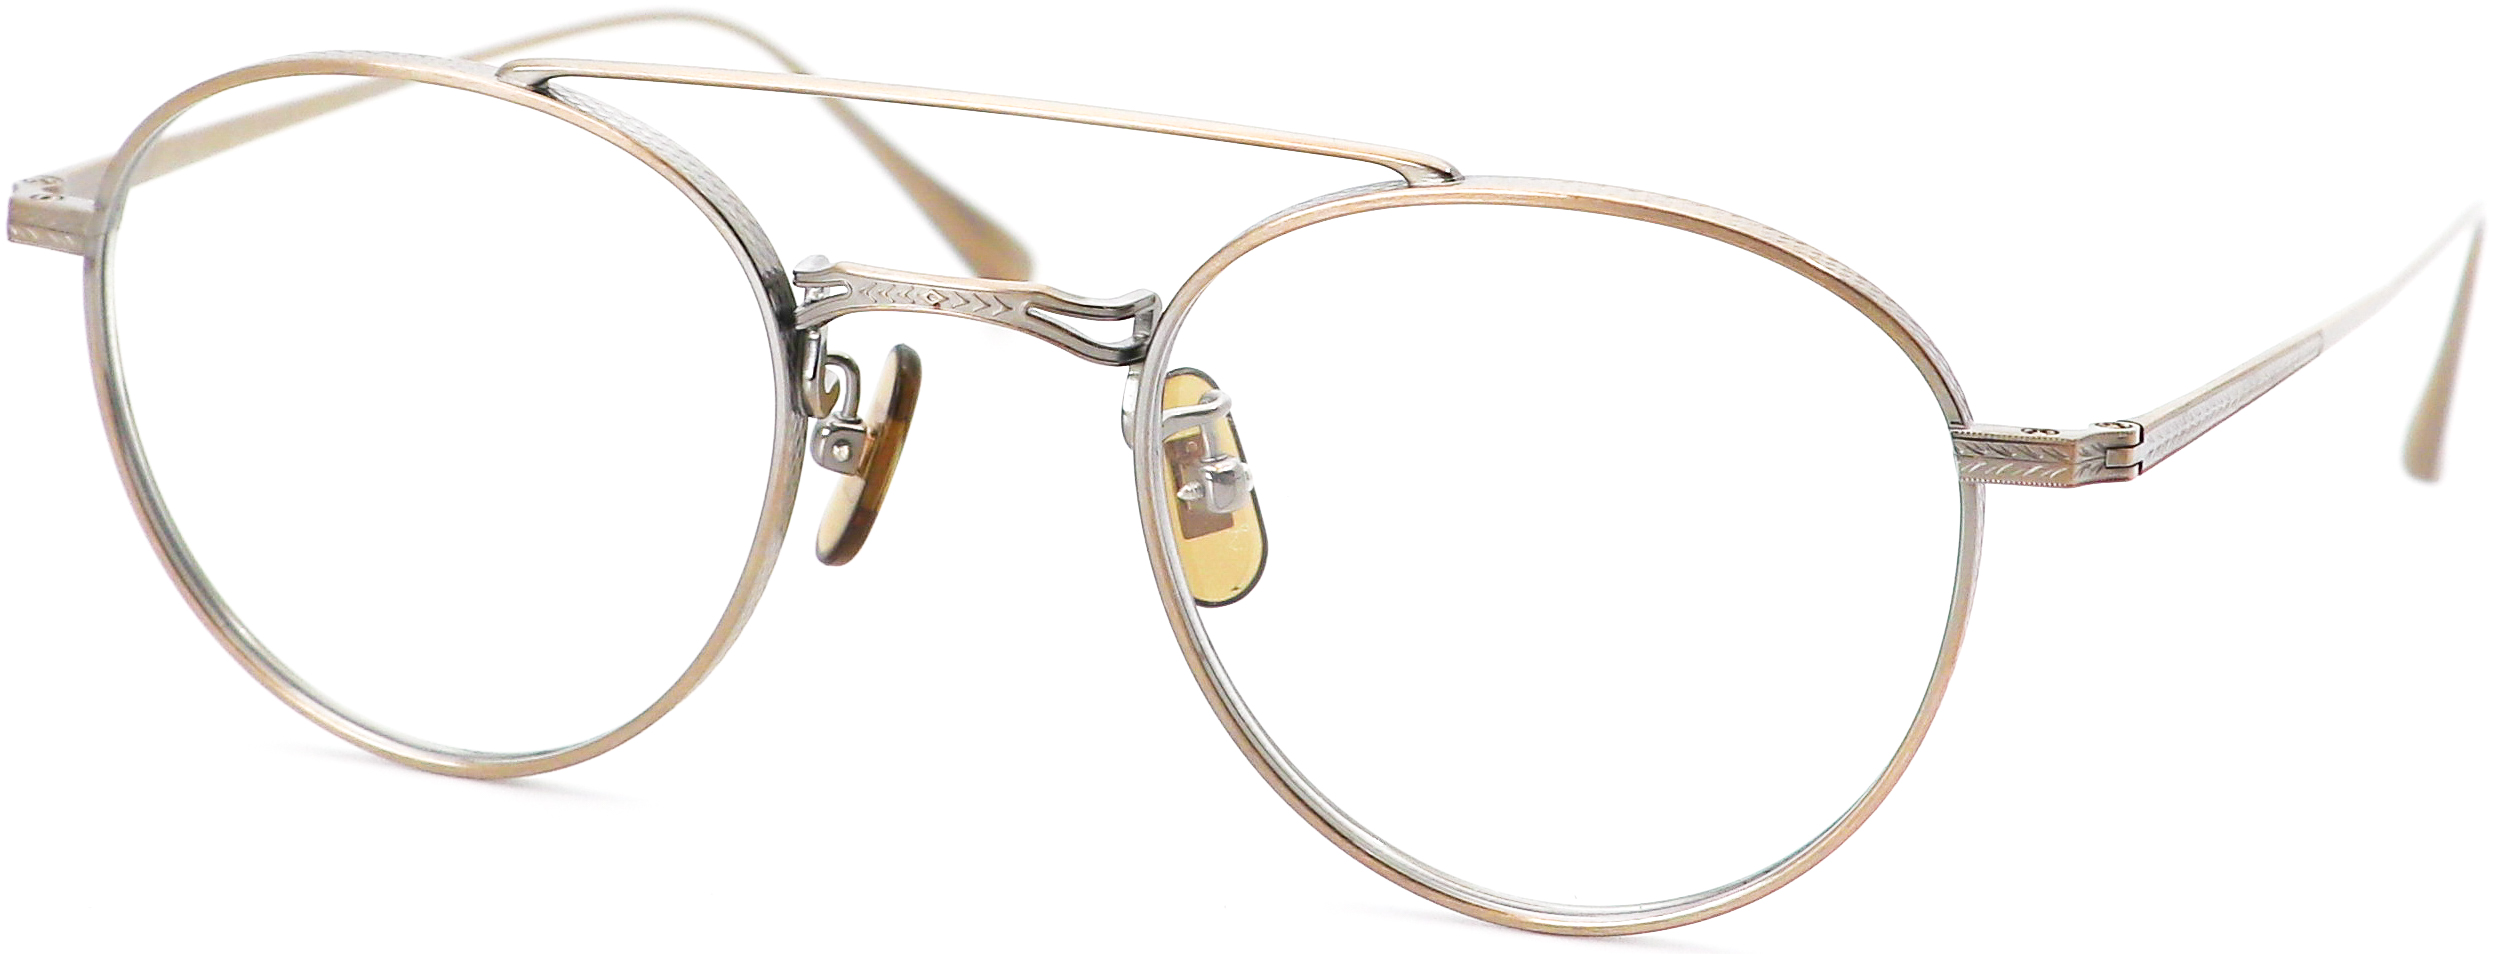 眼鏡のカラータイプC-3 At-Gold